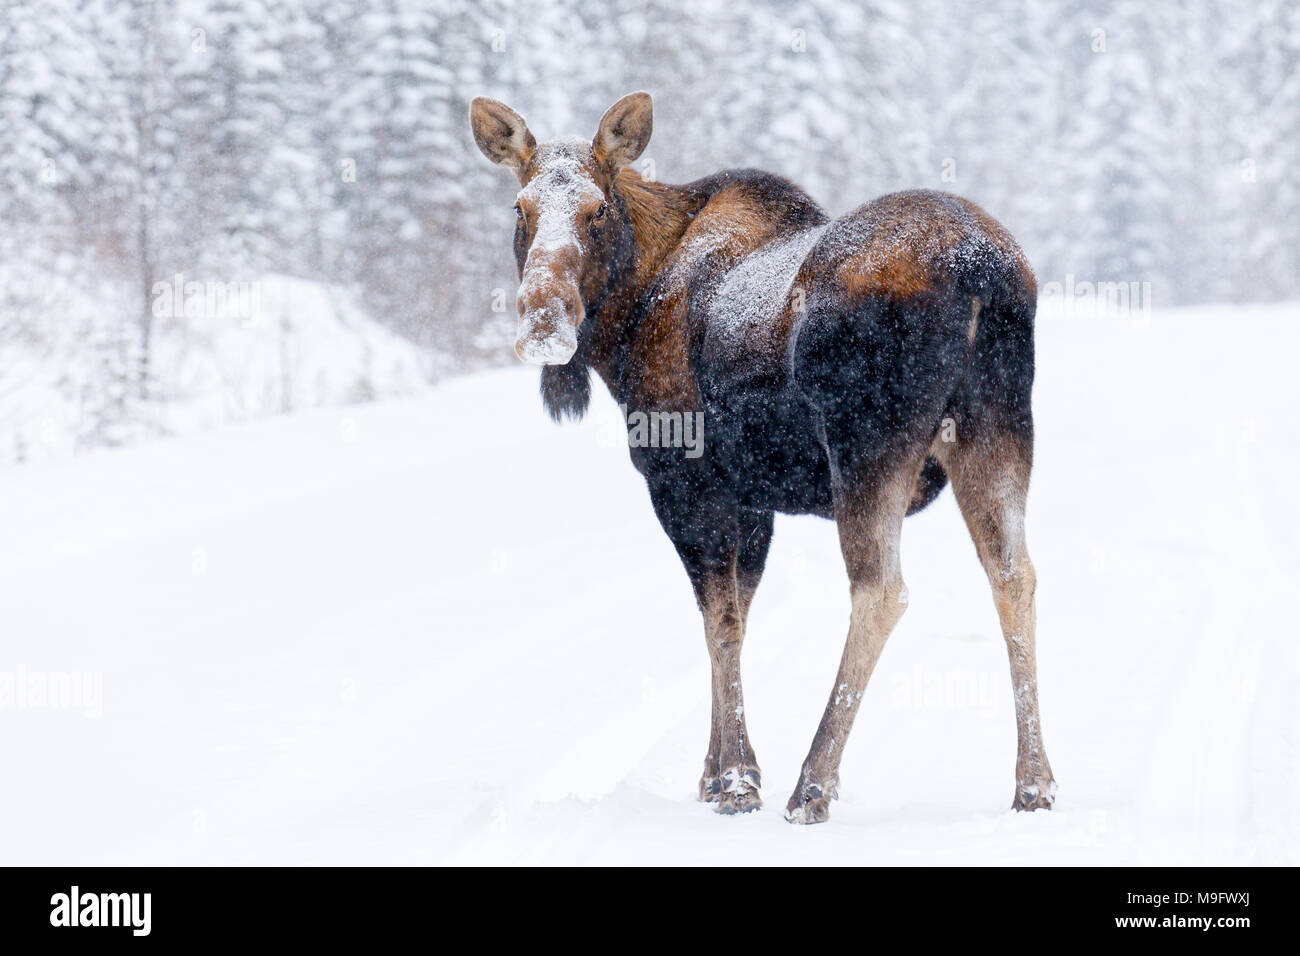 42,744.07791 Nordamerikanischen erwachsene Kuh Elch (Alces alces) auf einer verschneiten Straße in einem Nadelwald an Sie Stockfoto